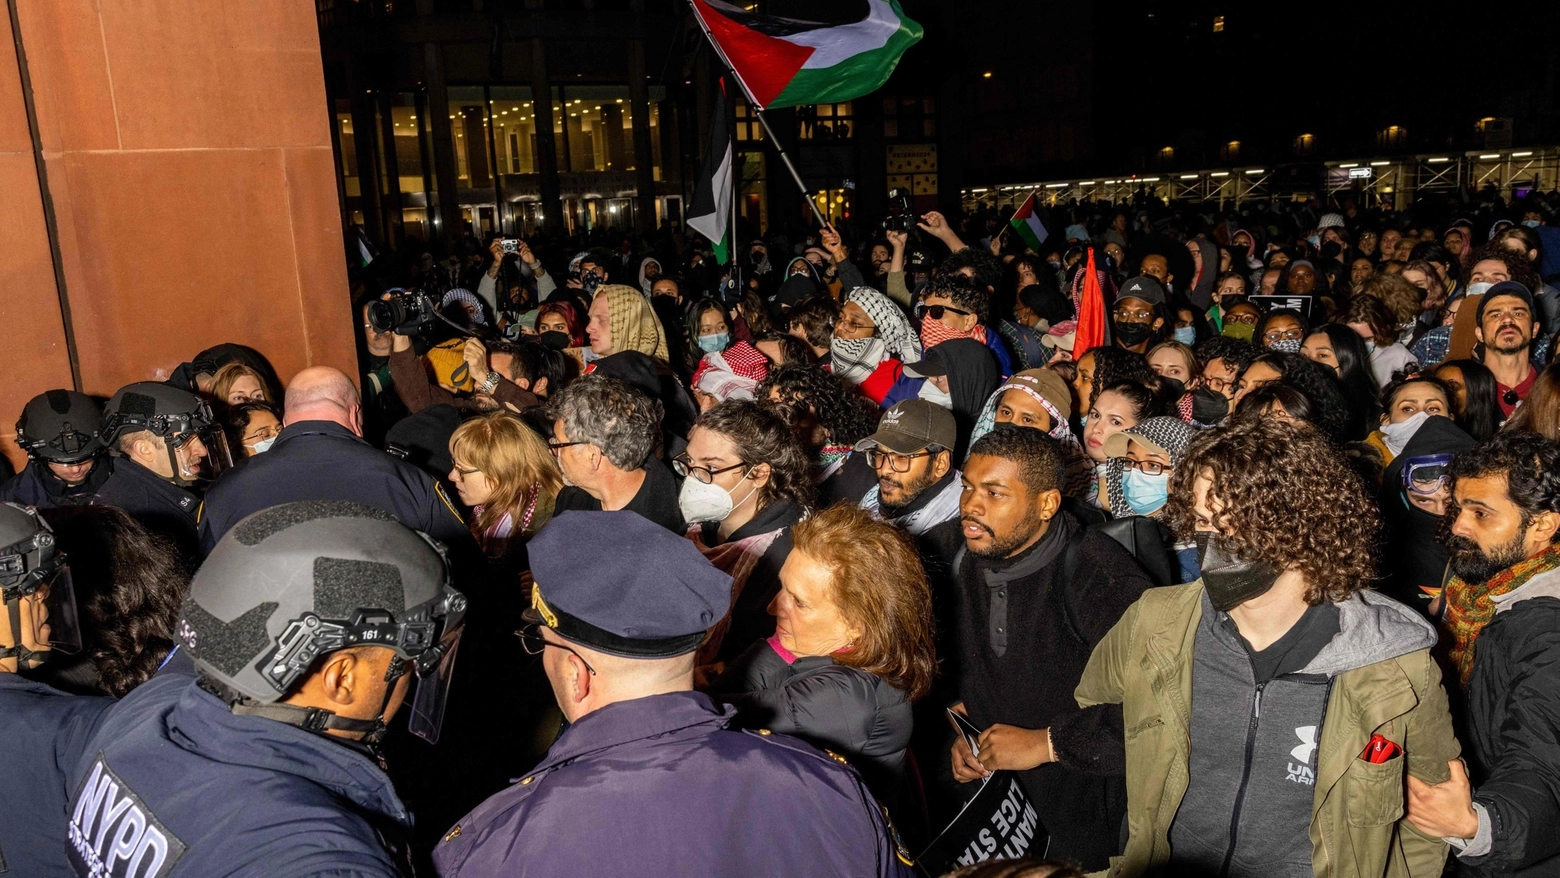 Manifestazioni studentesche da Yale a Berkley, caos e scontri. Alla Columbia lezioni online. Lapid: “Ciò che accade è imperdonabile, è antisemitismo”